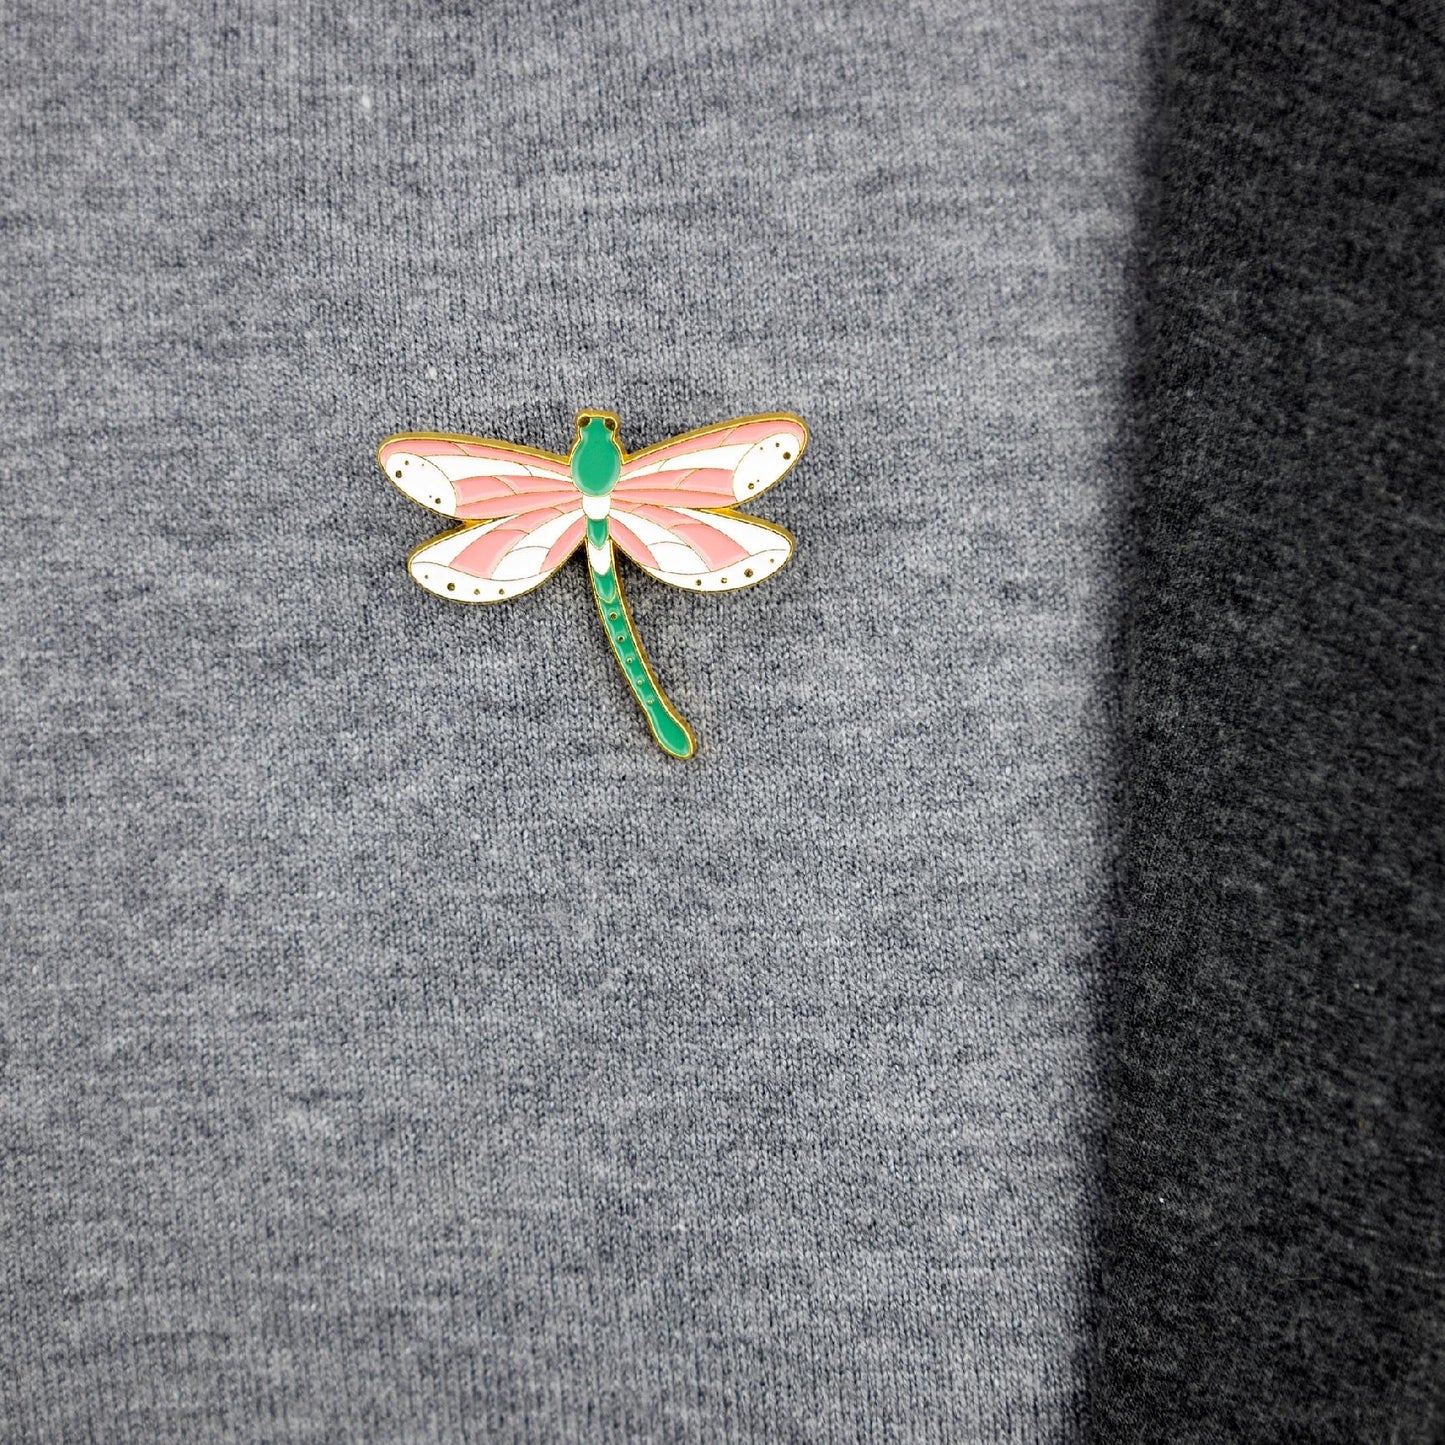 Ważka zielona z biało-różowymi skrzydłami - przypinka